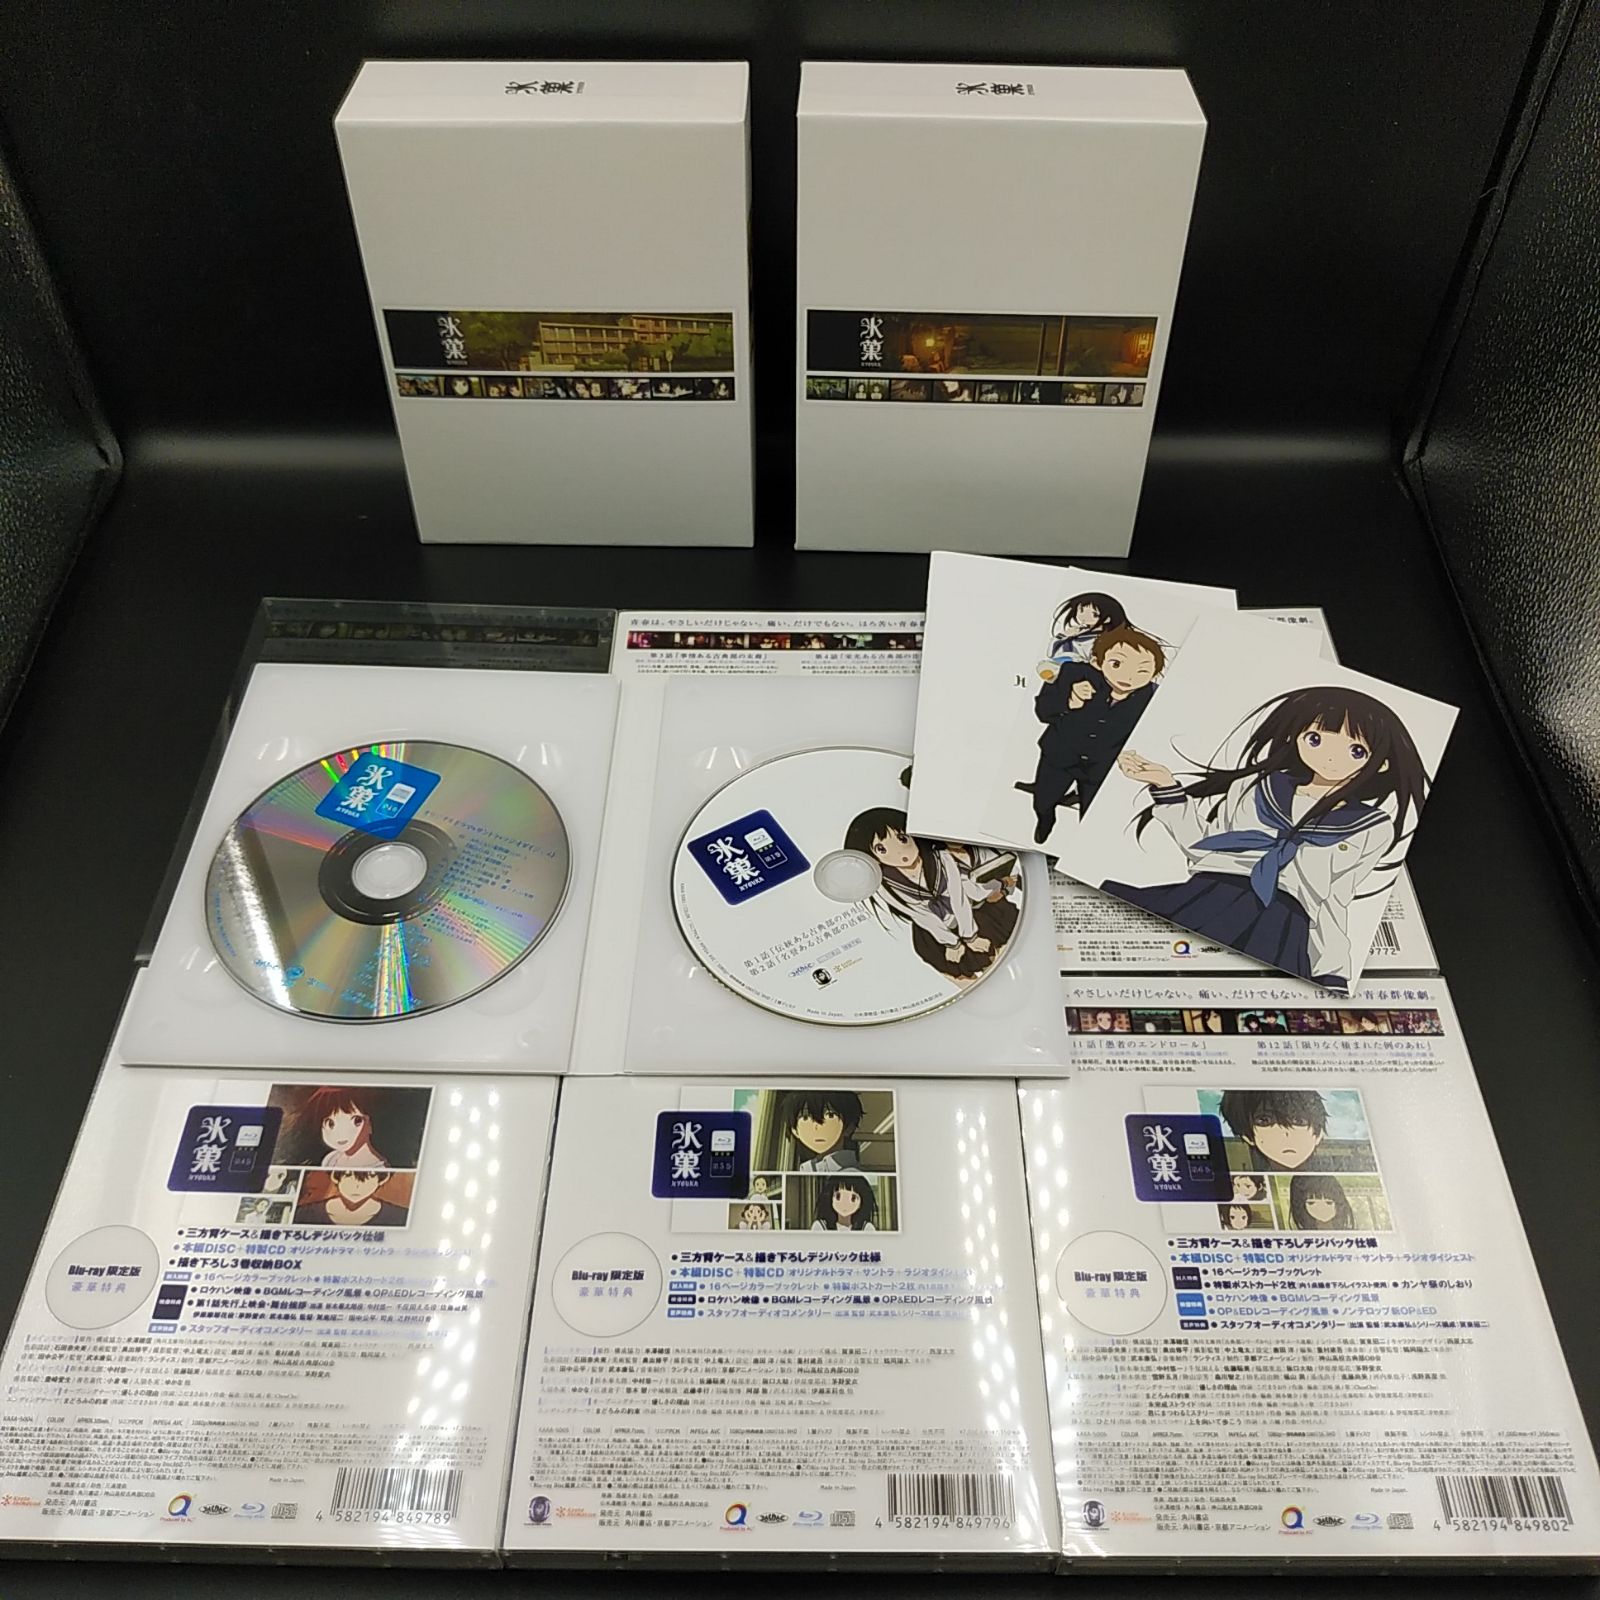 氷菓 初回限定版 BOX付き全11巻セット アニメBlu-ray ディスク (05 